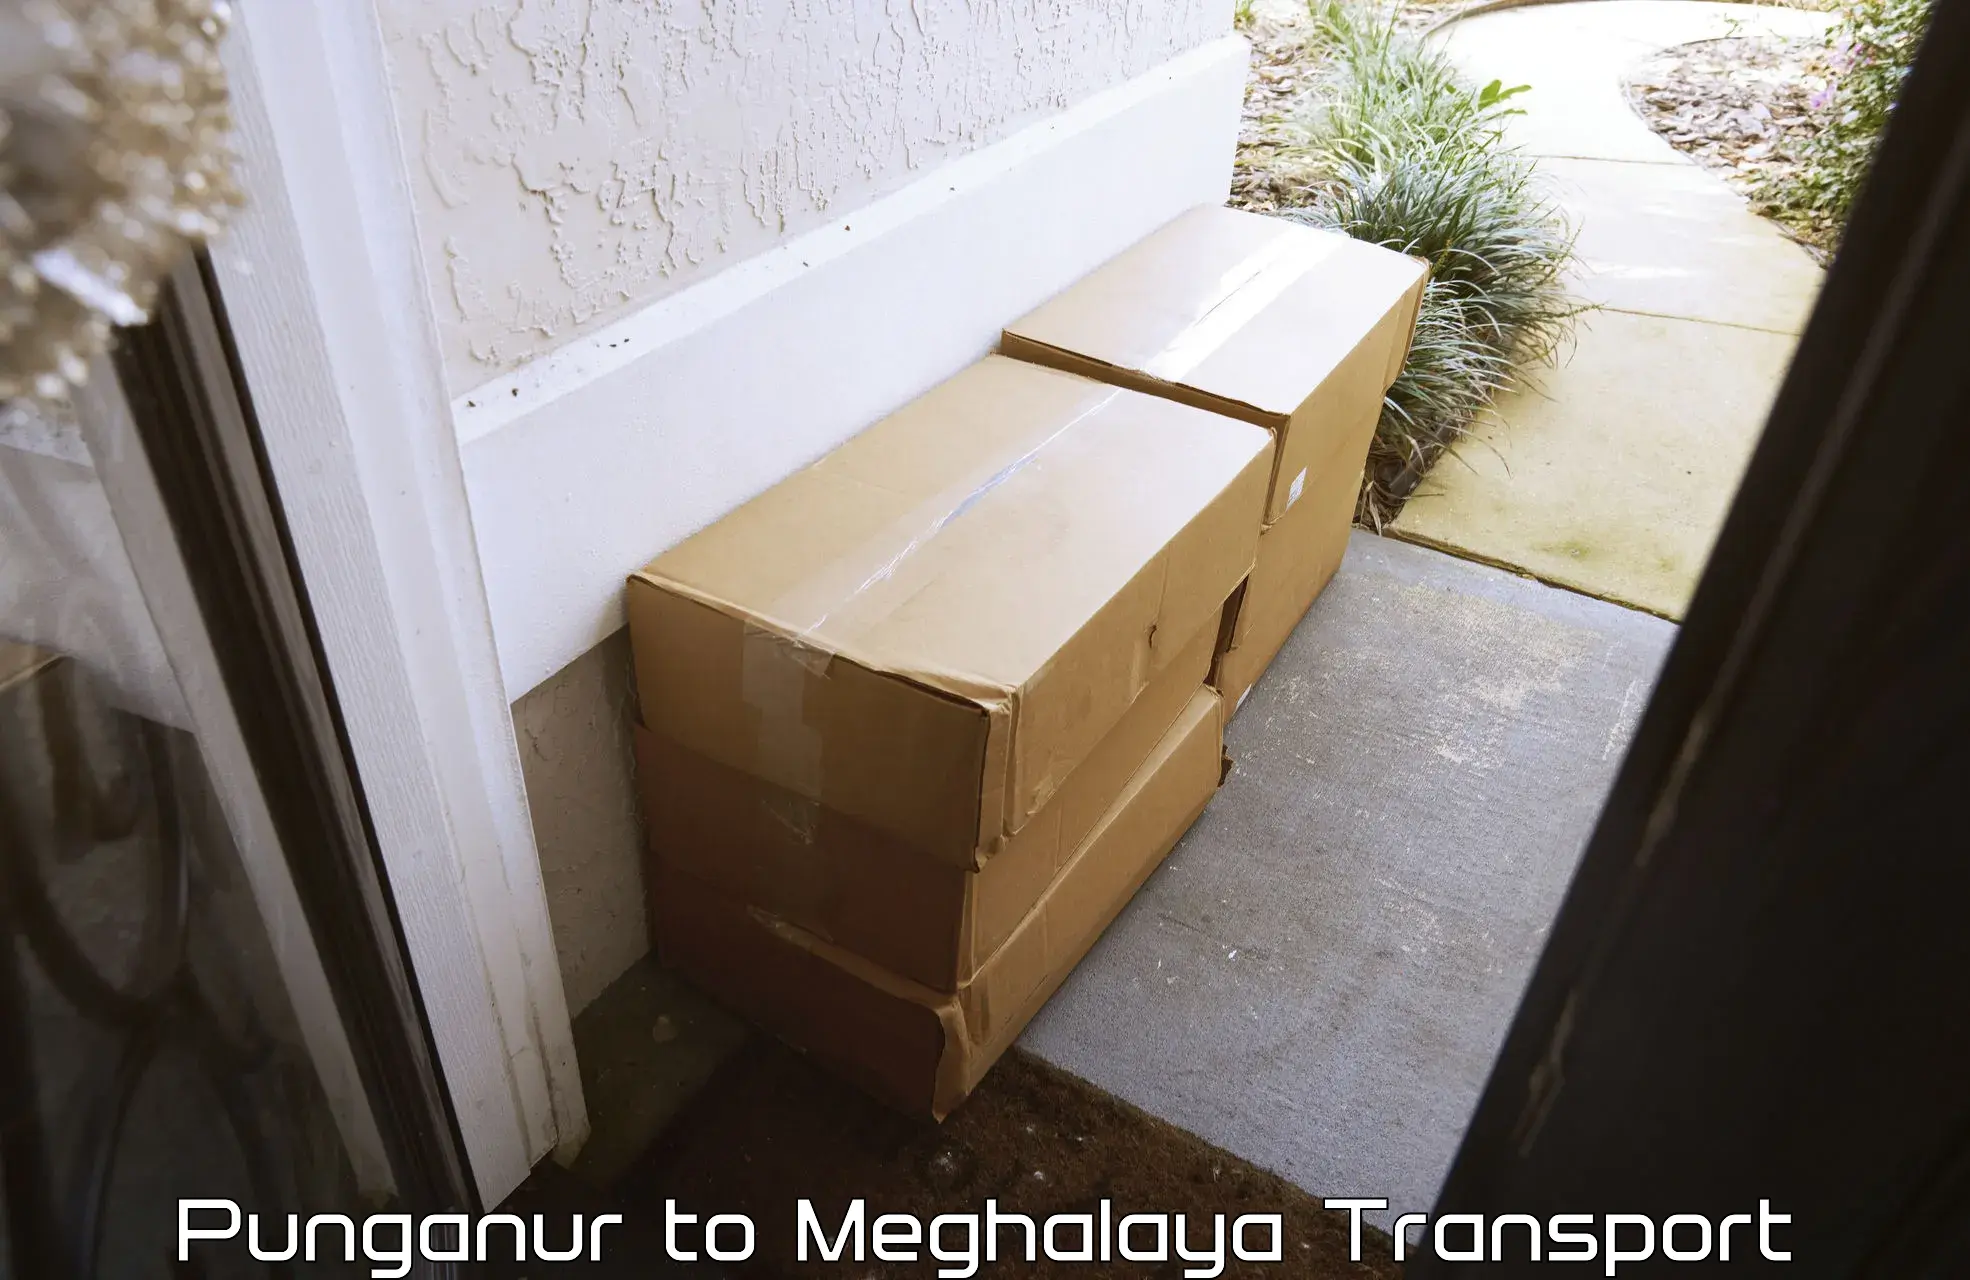 Shipping services Punganur to Meghalaya